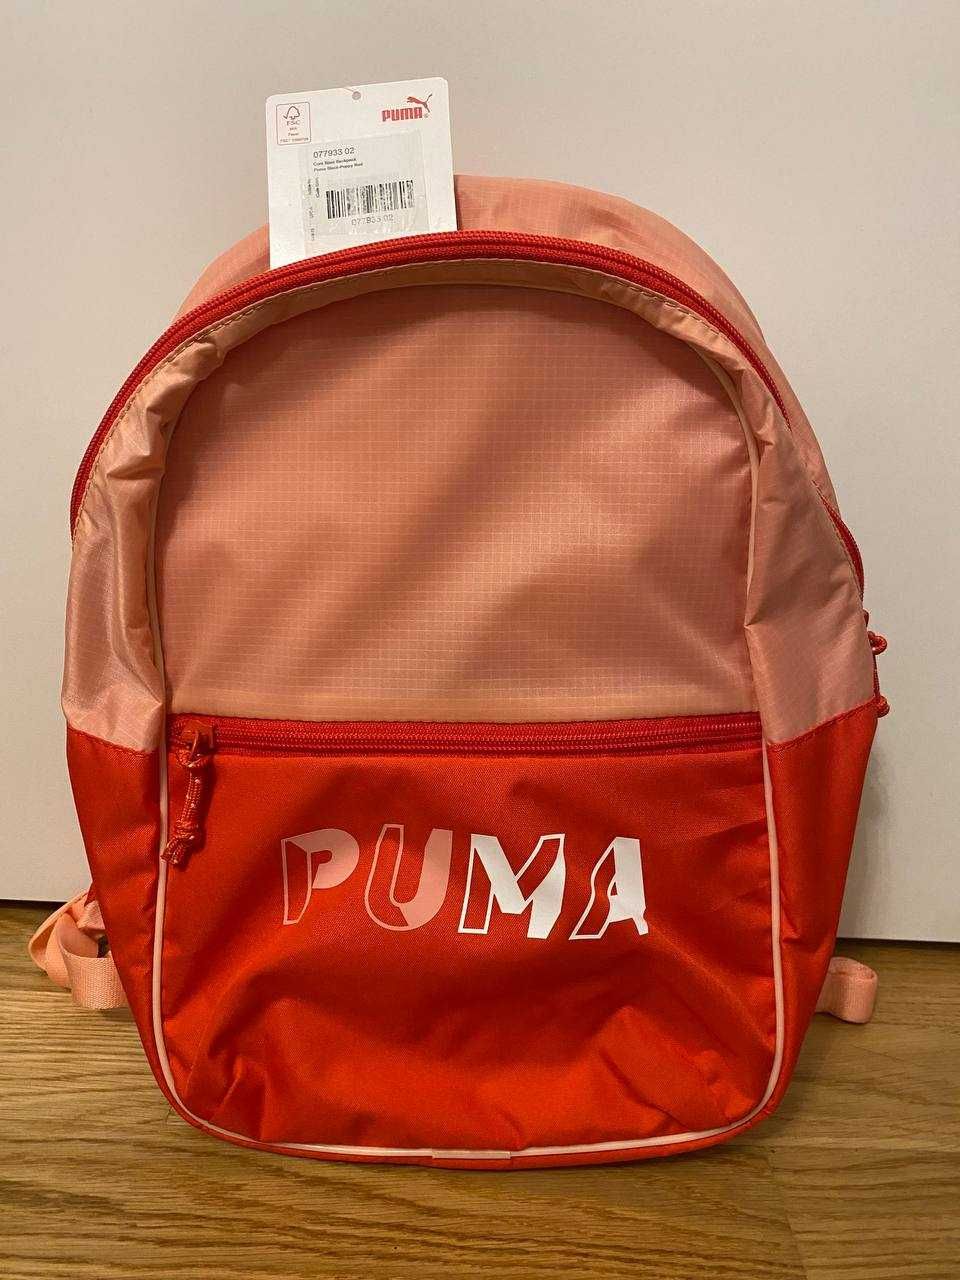 Рюкзак Puma Core Base Backpack сумка оригінал